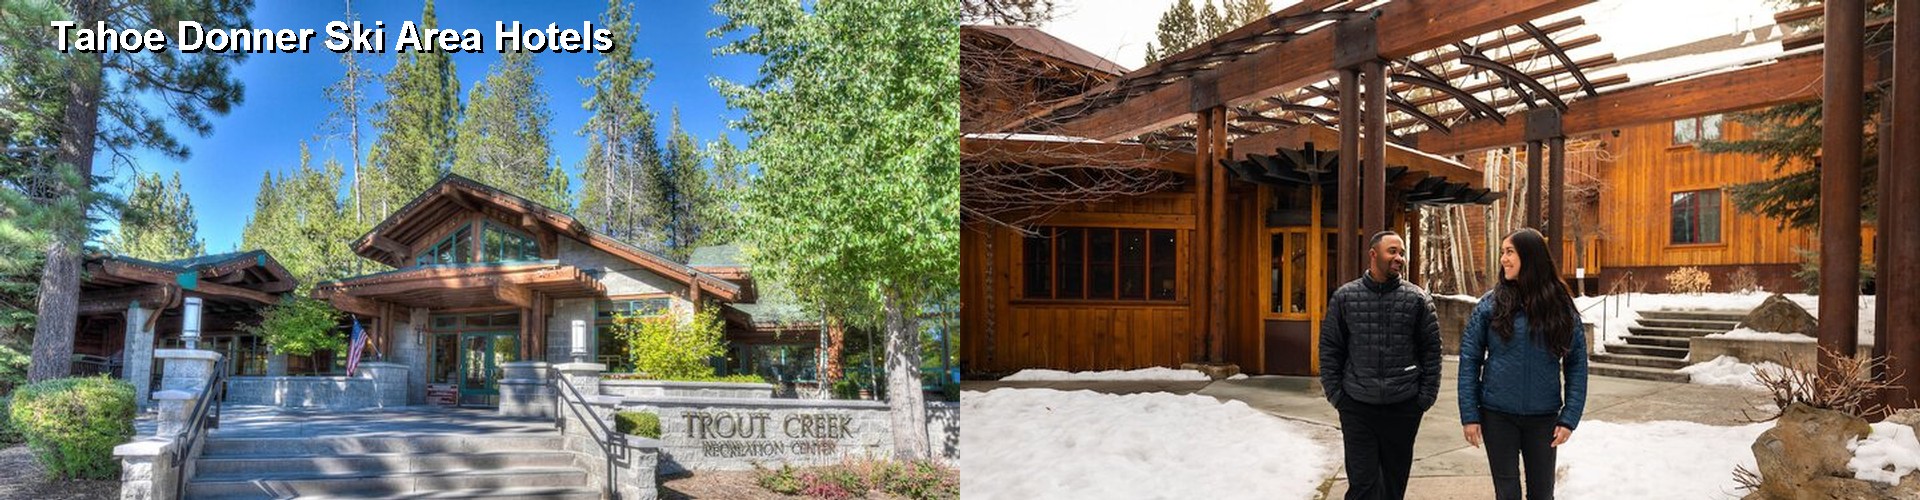 5 Best Hotels near Tahoe Donner Ski Area